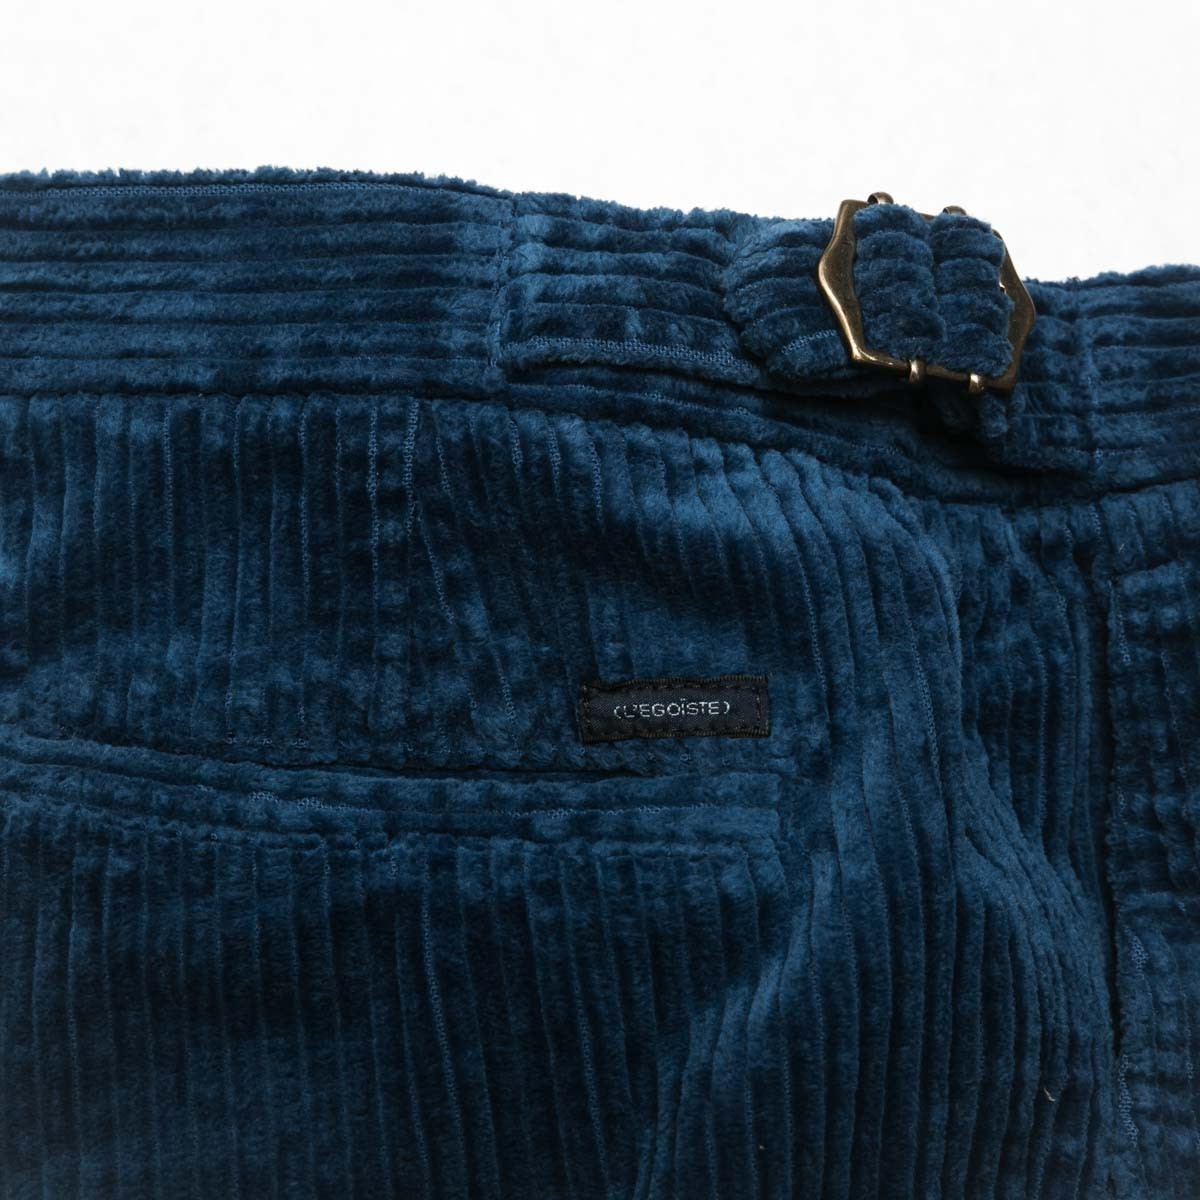 pantalon-a-pinces-en-velours-cotele-indigo-detail-ceinture